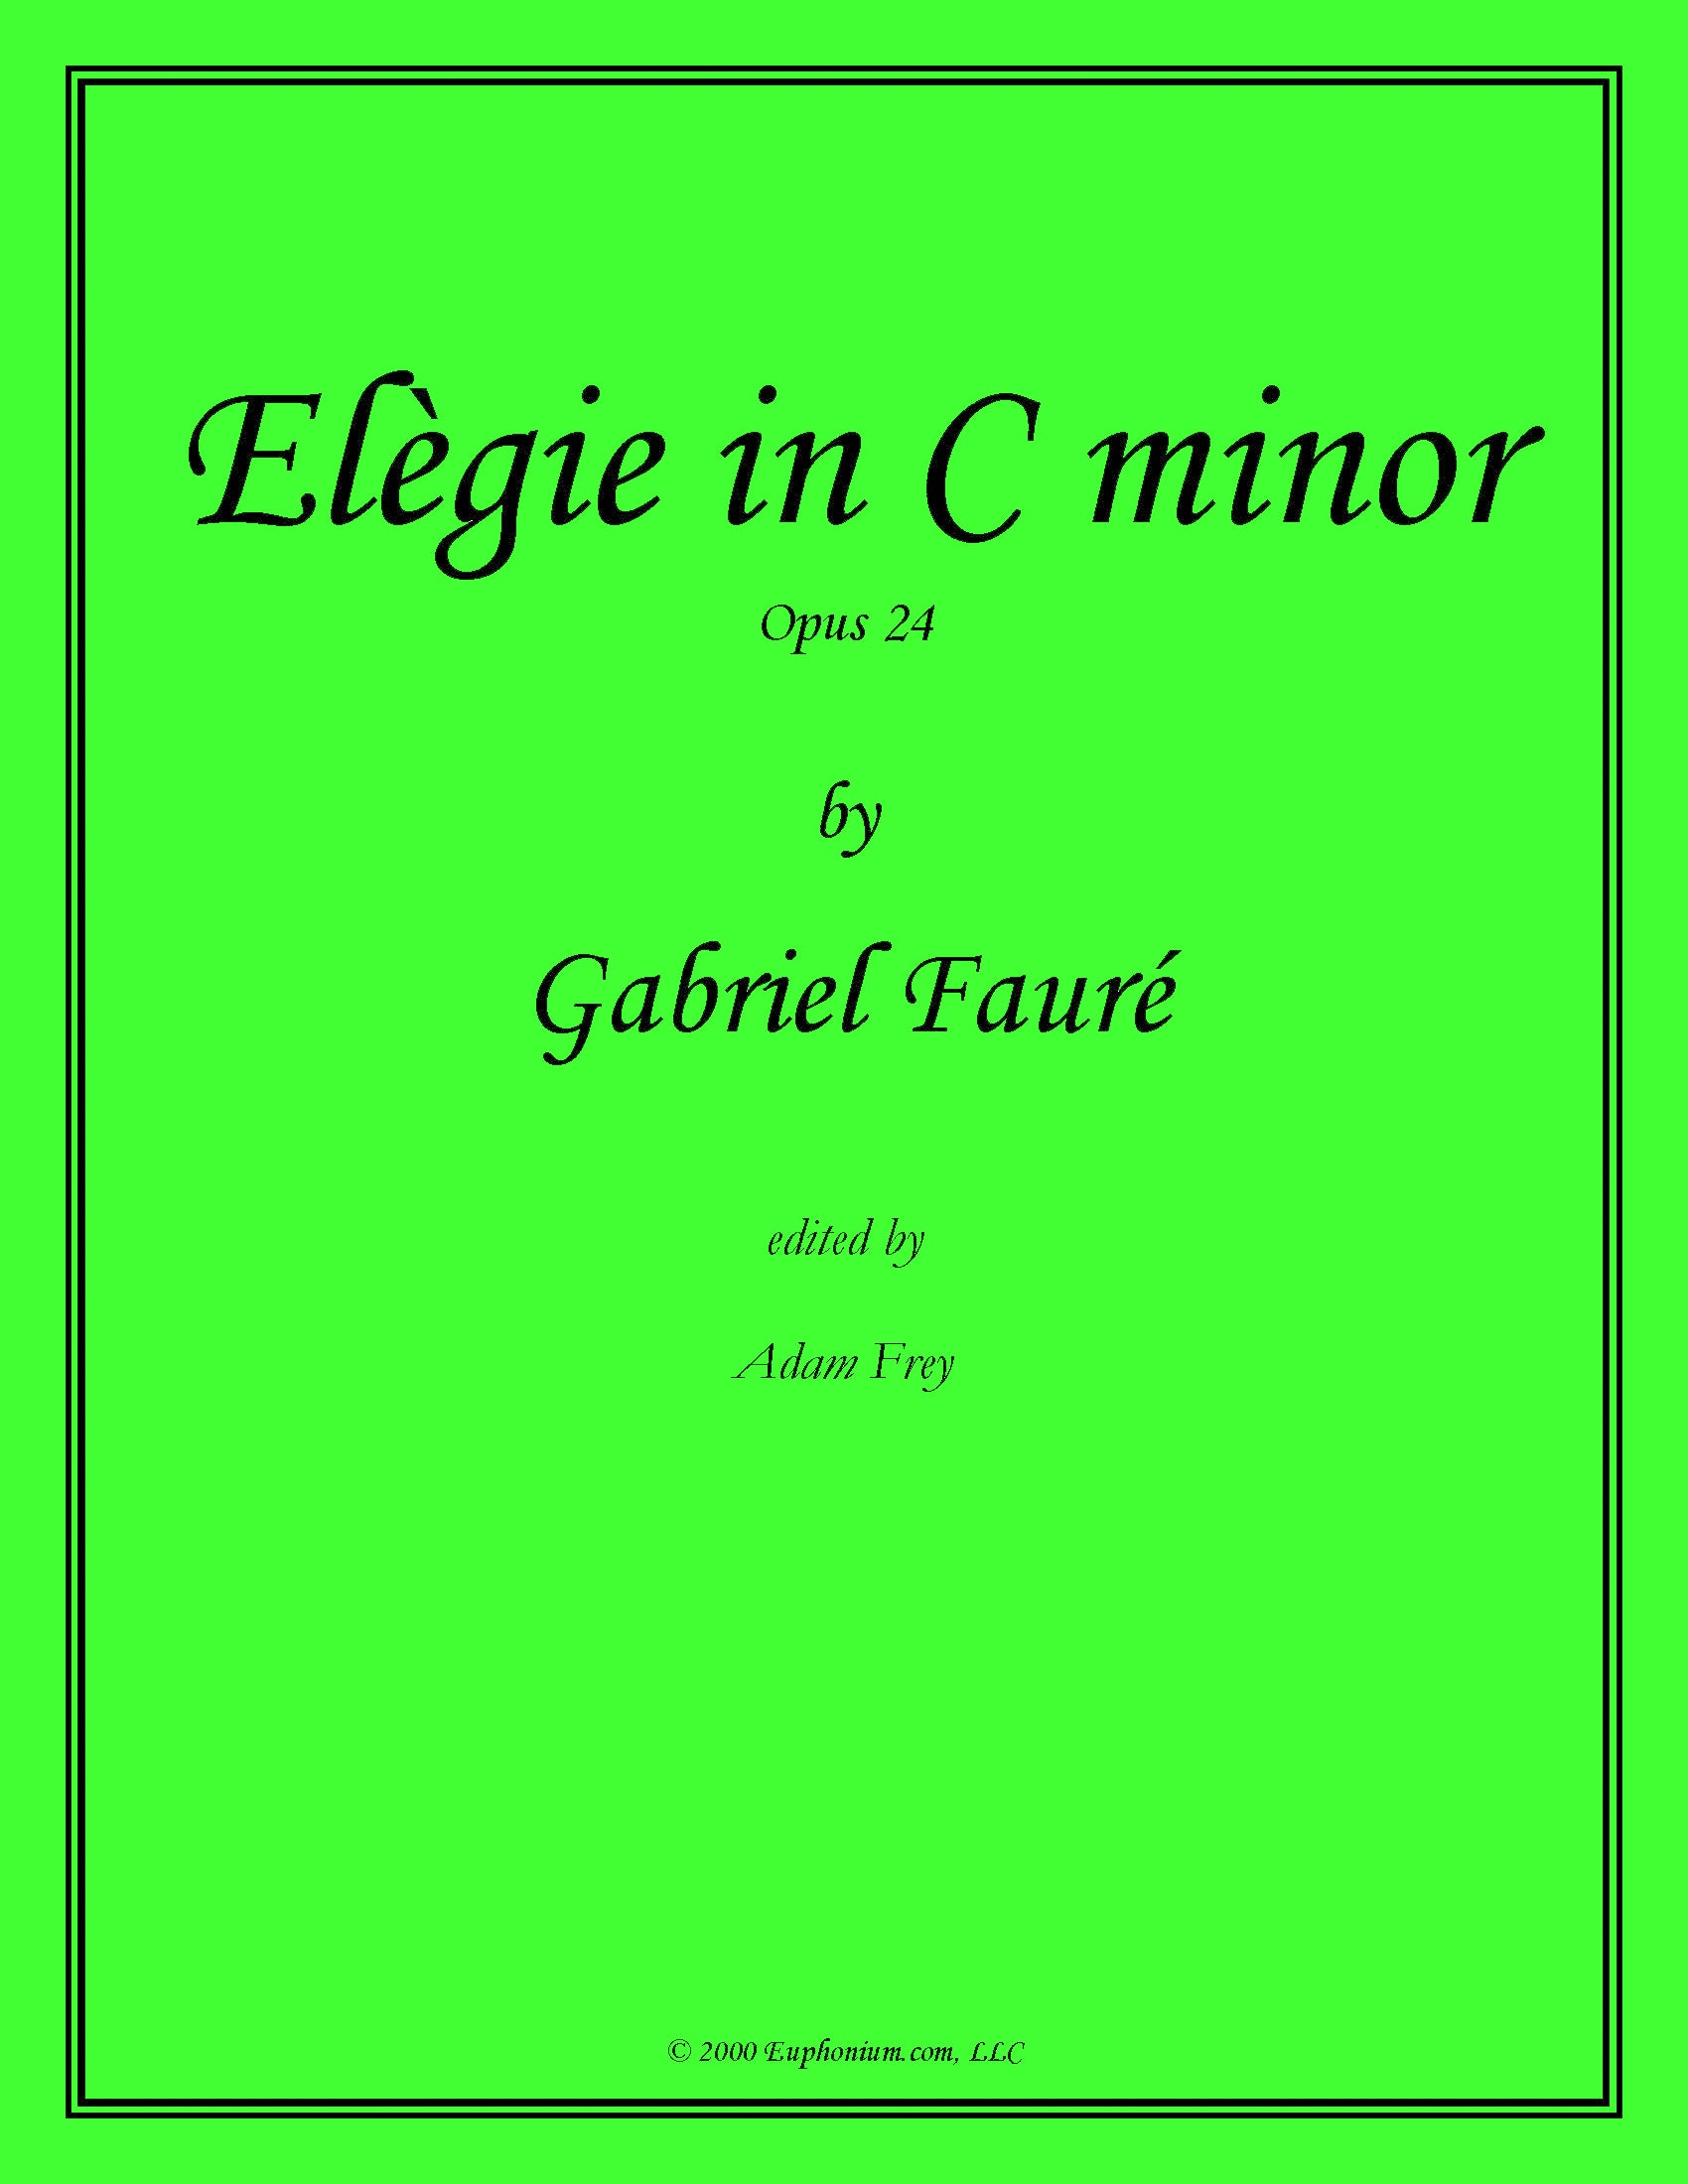 Faure, Gabriel - Elegie in C minor – TubaMusic.com & Euphonium.com